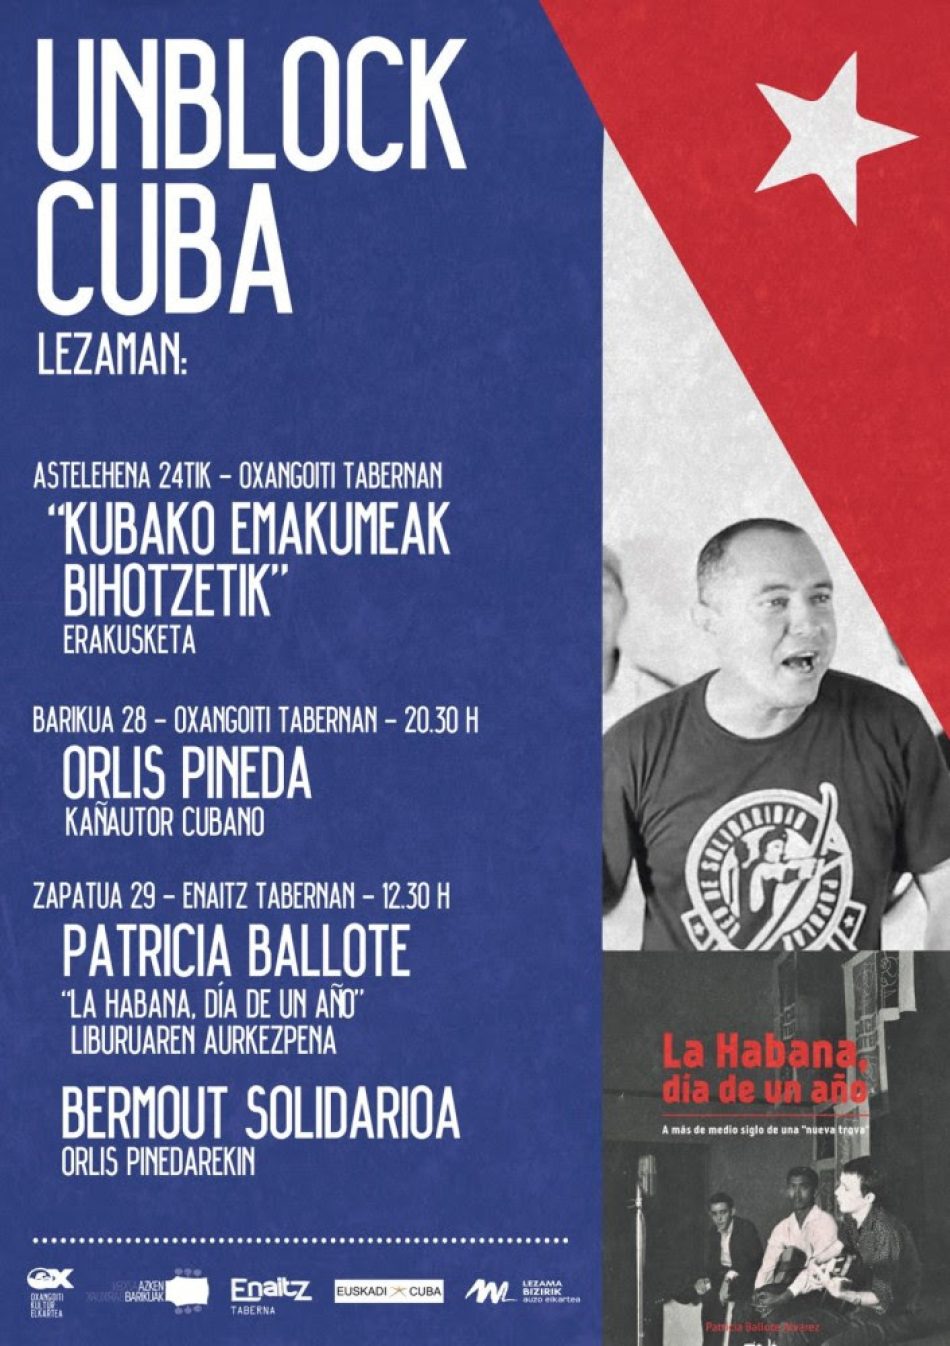 Concierto, exposición y presentación de libro en la jornada «Unblock Cuba!»: Lezama (Bizkaia), 28 y 29 de junio